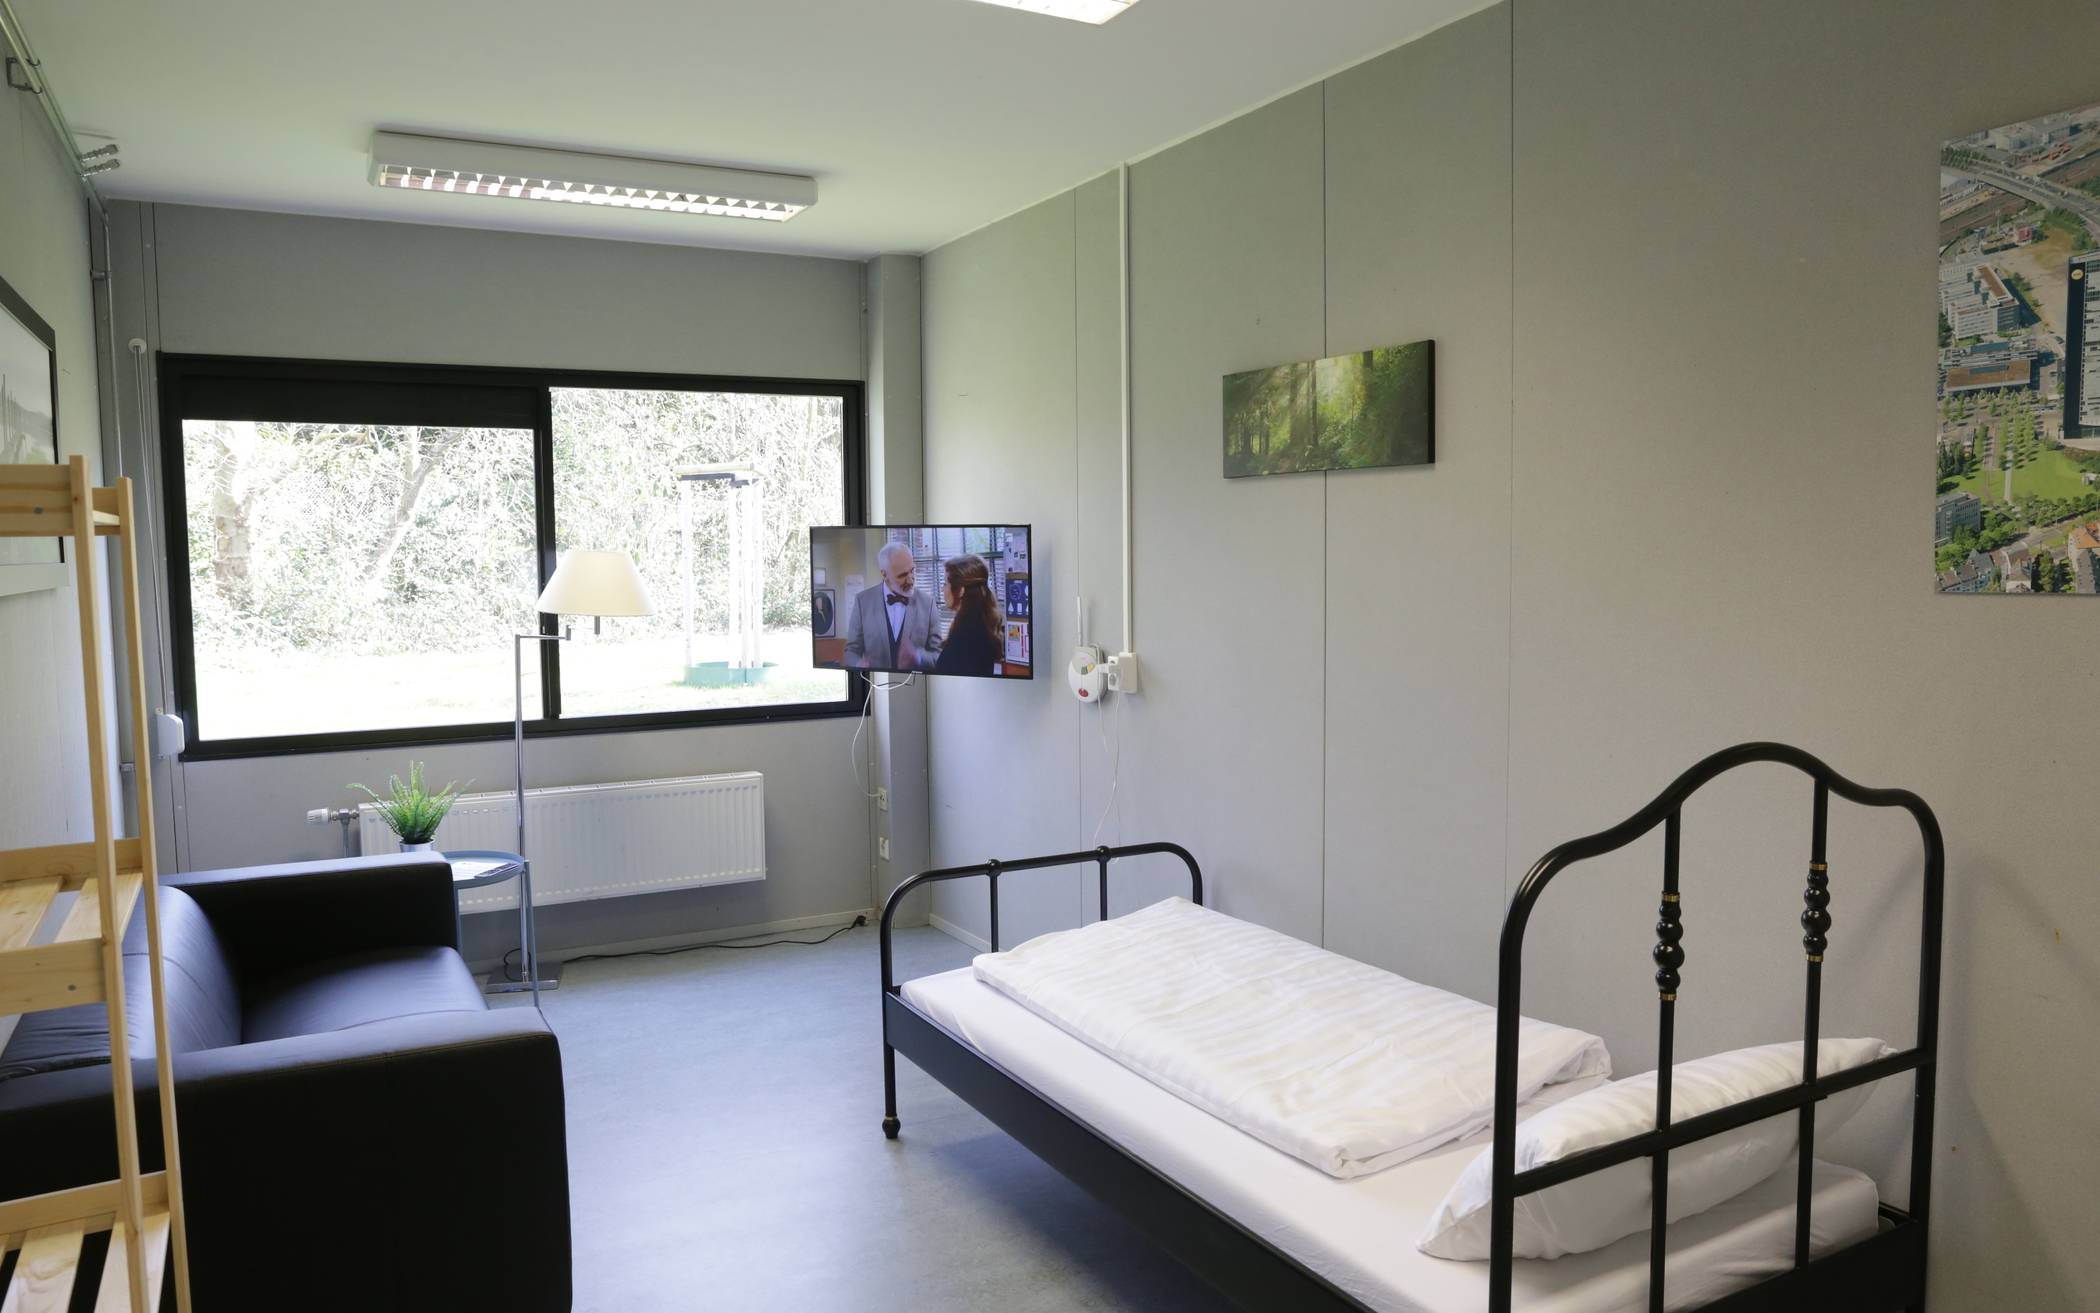  Die Stadt hat an der Blanckertzstraße im Stadtteil Ludenberg eine Flüchtlingsunterkunft zu einer Wohnanlage für die häusliche Quarantäne umgebaut. 